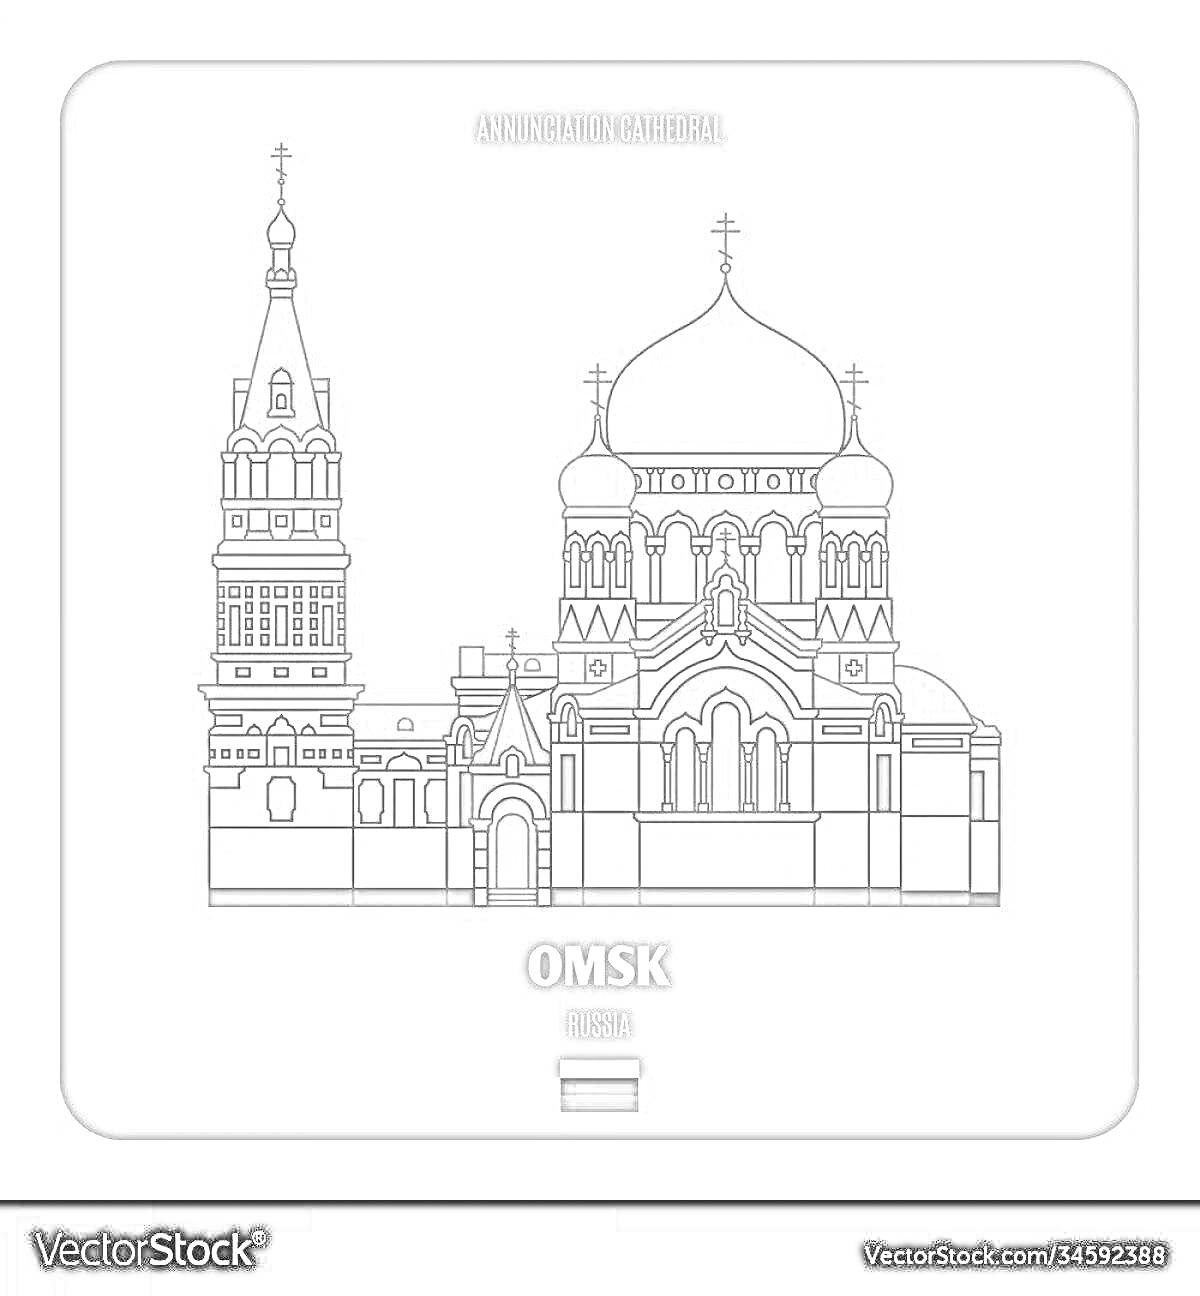 Раскраска Успенский кафедральный собор, Омск — изображение собора с массивным центральным куполом и колокольней рядом.